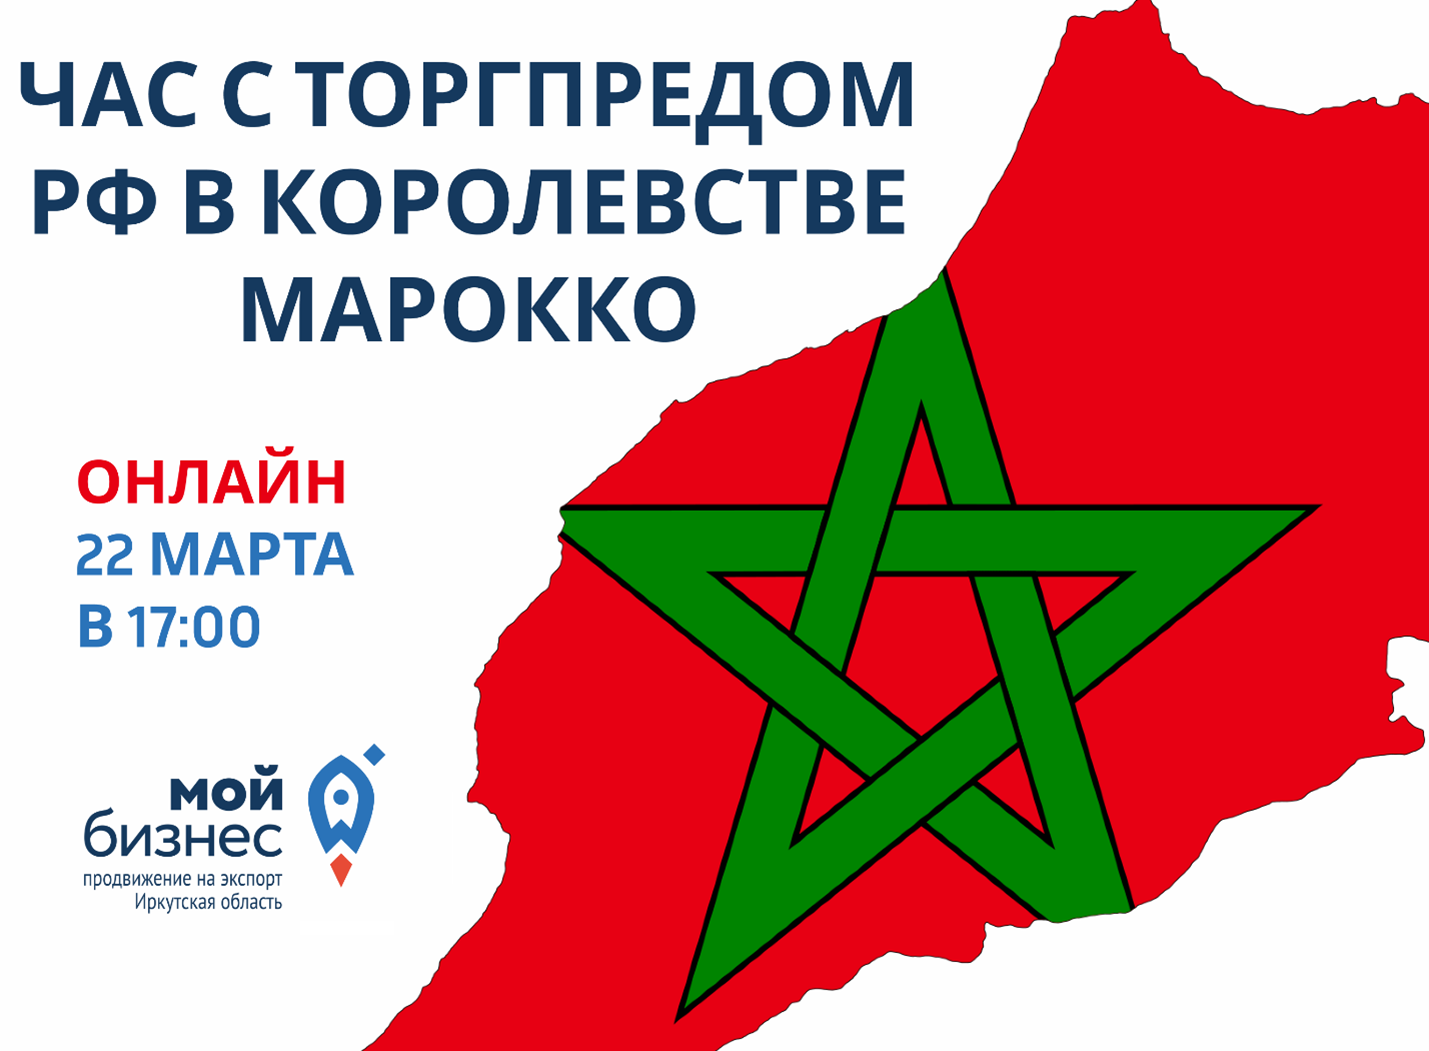 Приглашаем принять участие в видеоконференции с Торговым представителем РФ в Королевстве Марокко